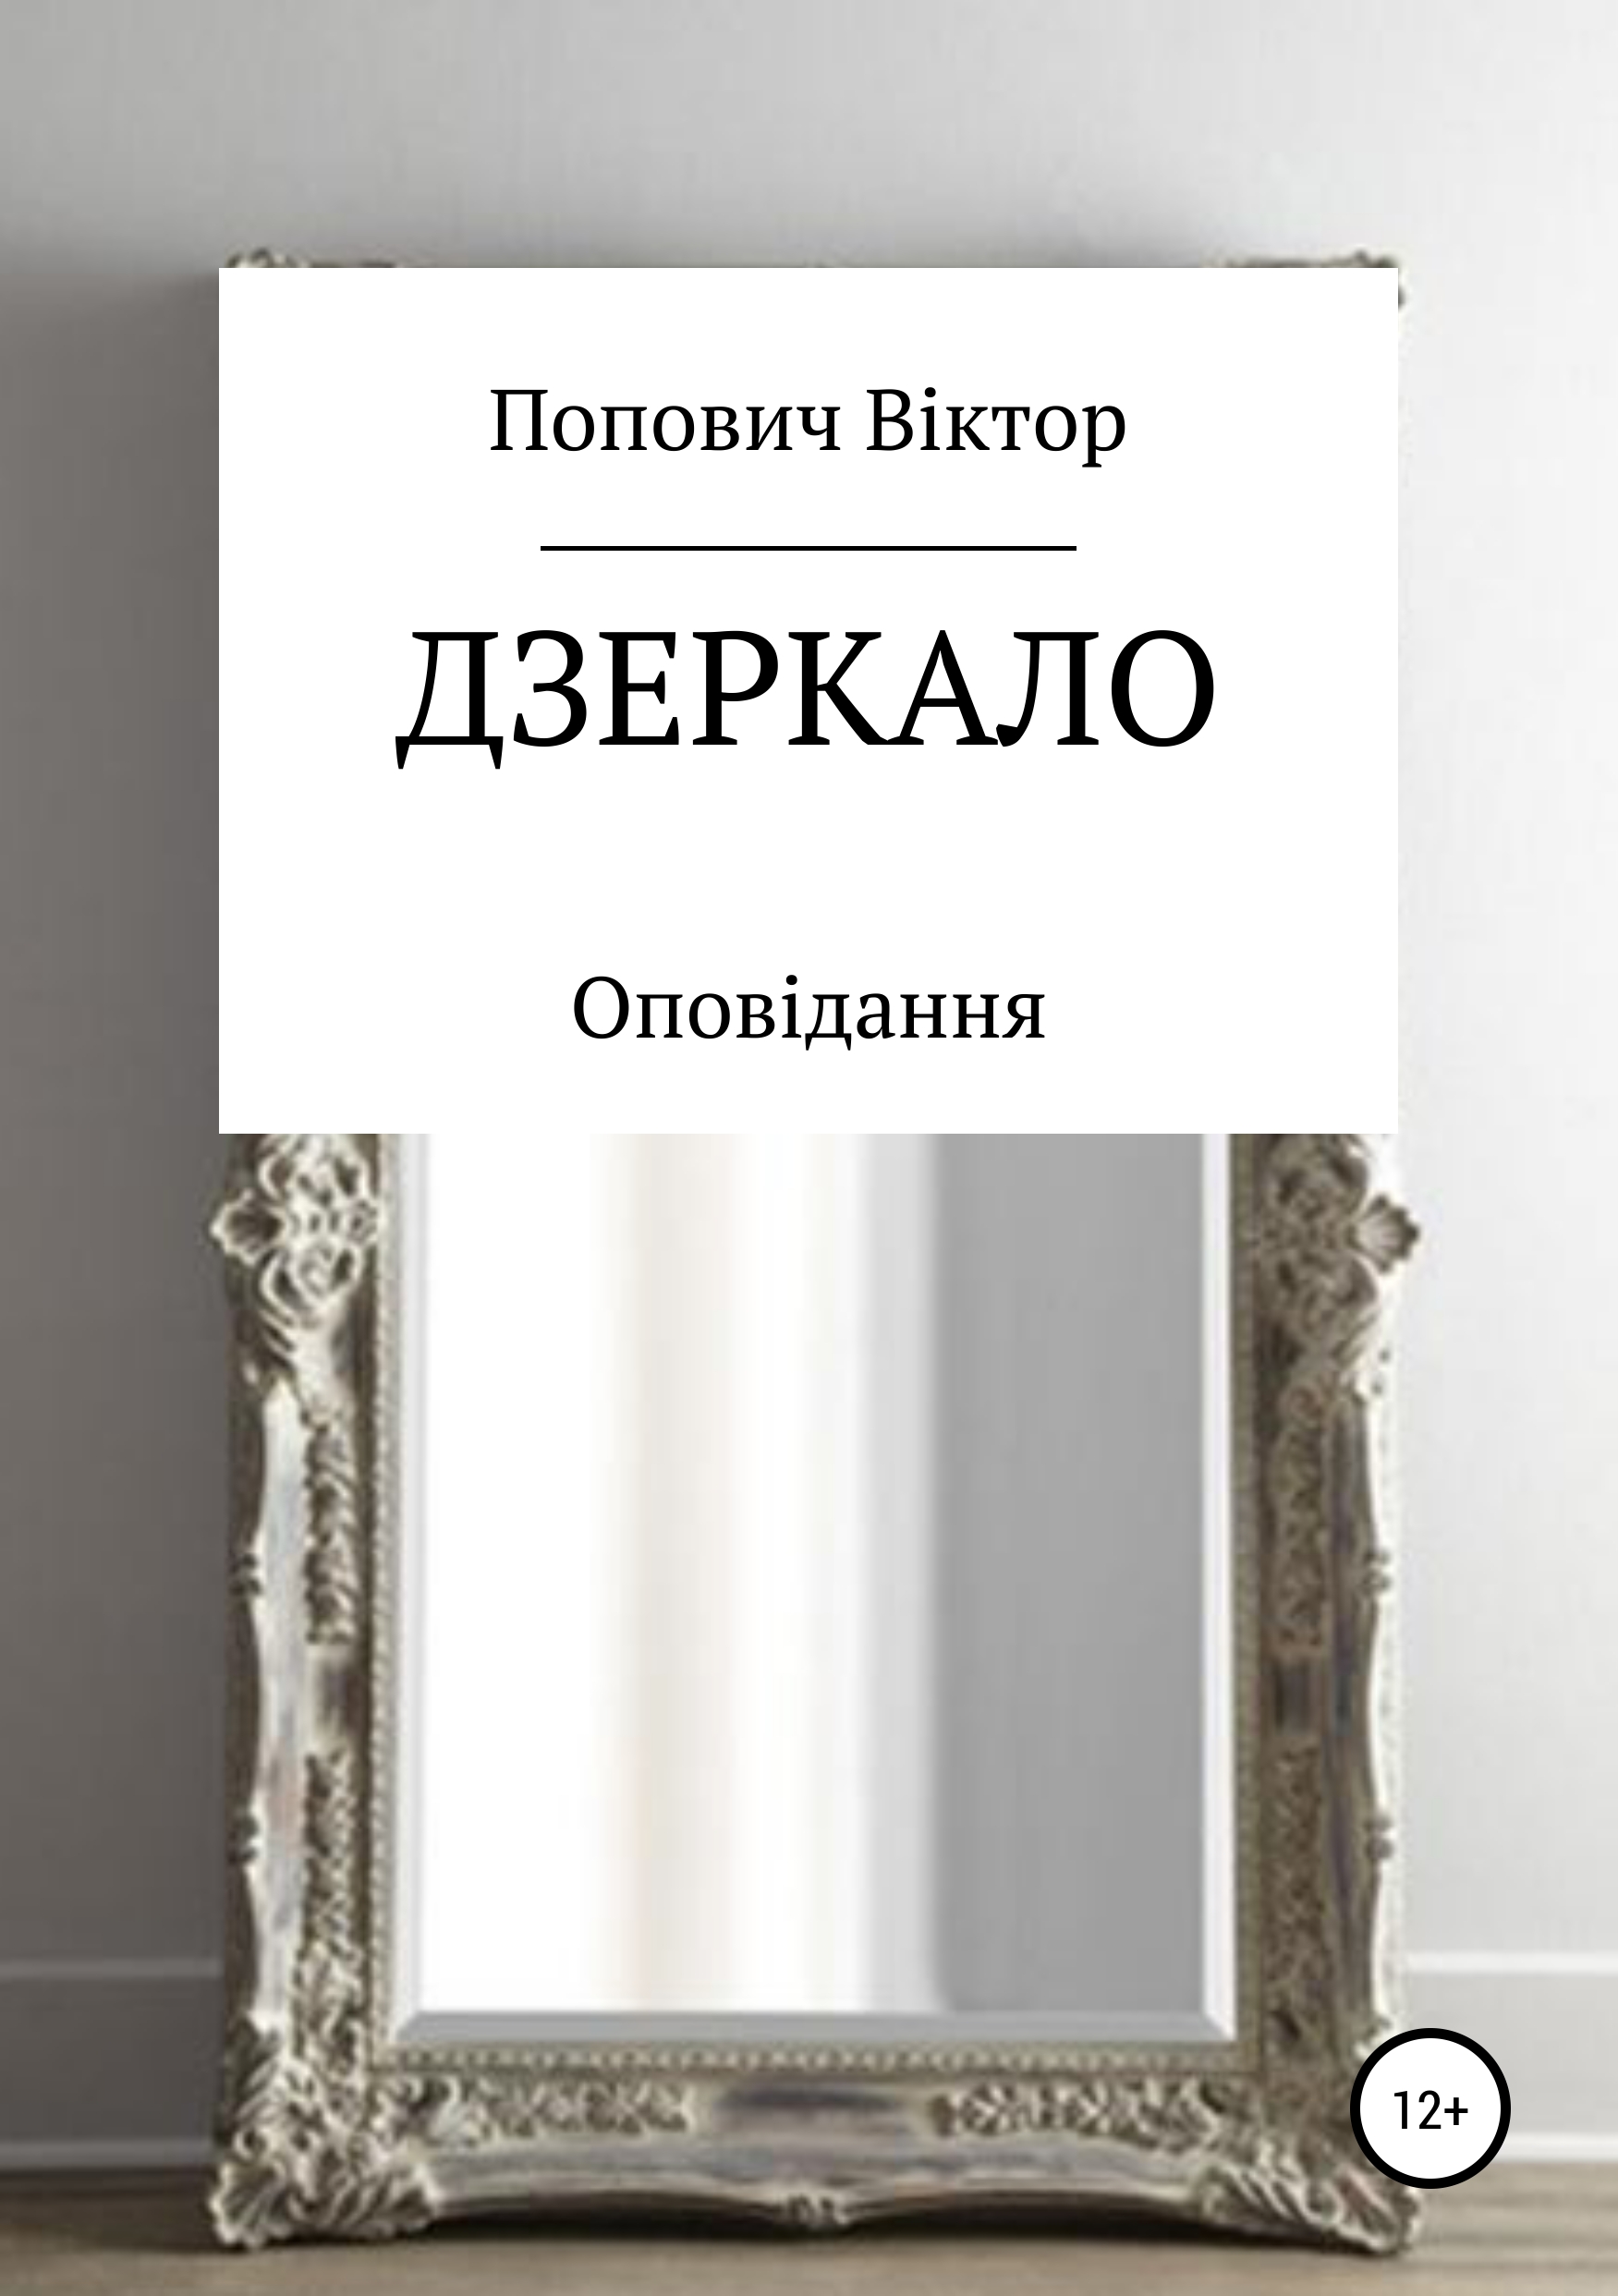 Книга Дзеркало из серии , созданная Виктор Попович, может относится к жанру Личностный рост. Стоимость электронной книги Дзеркало с идентификатором 40429289 составляет 0 руб.